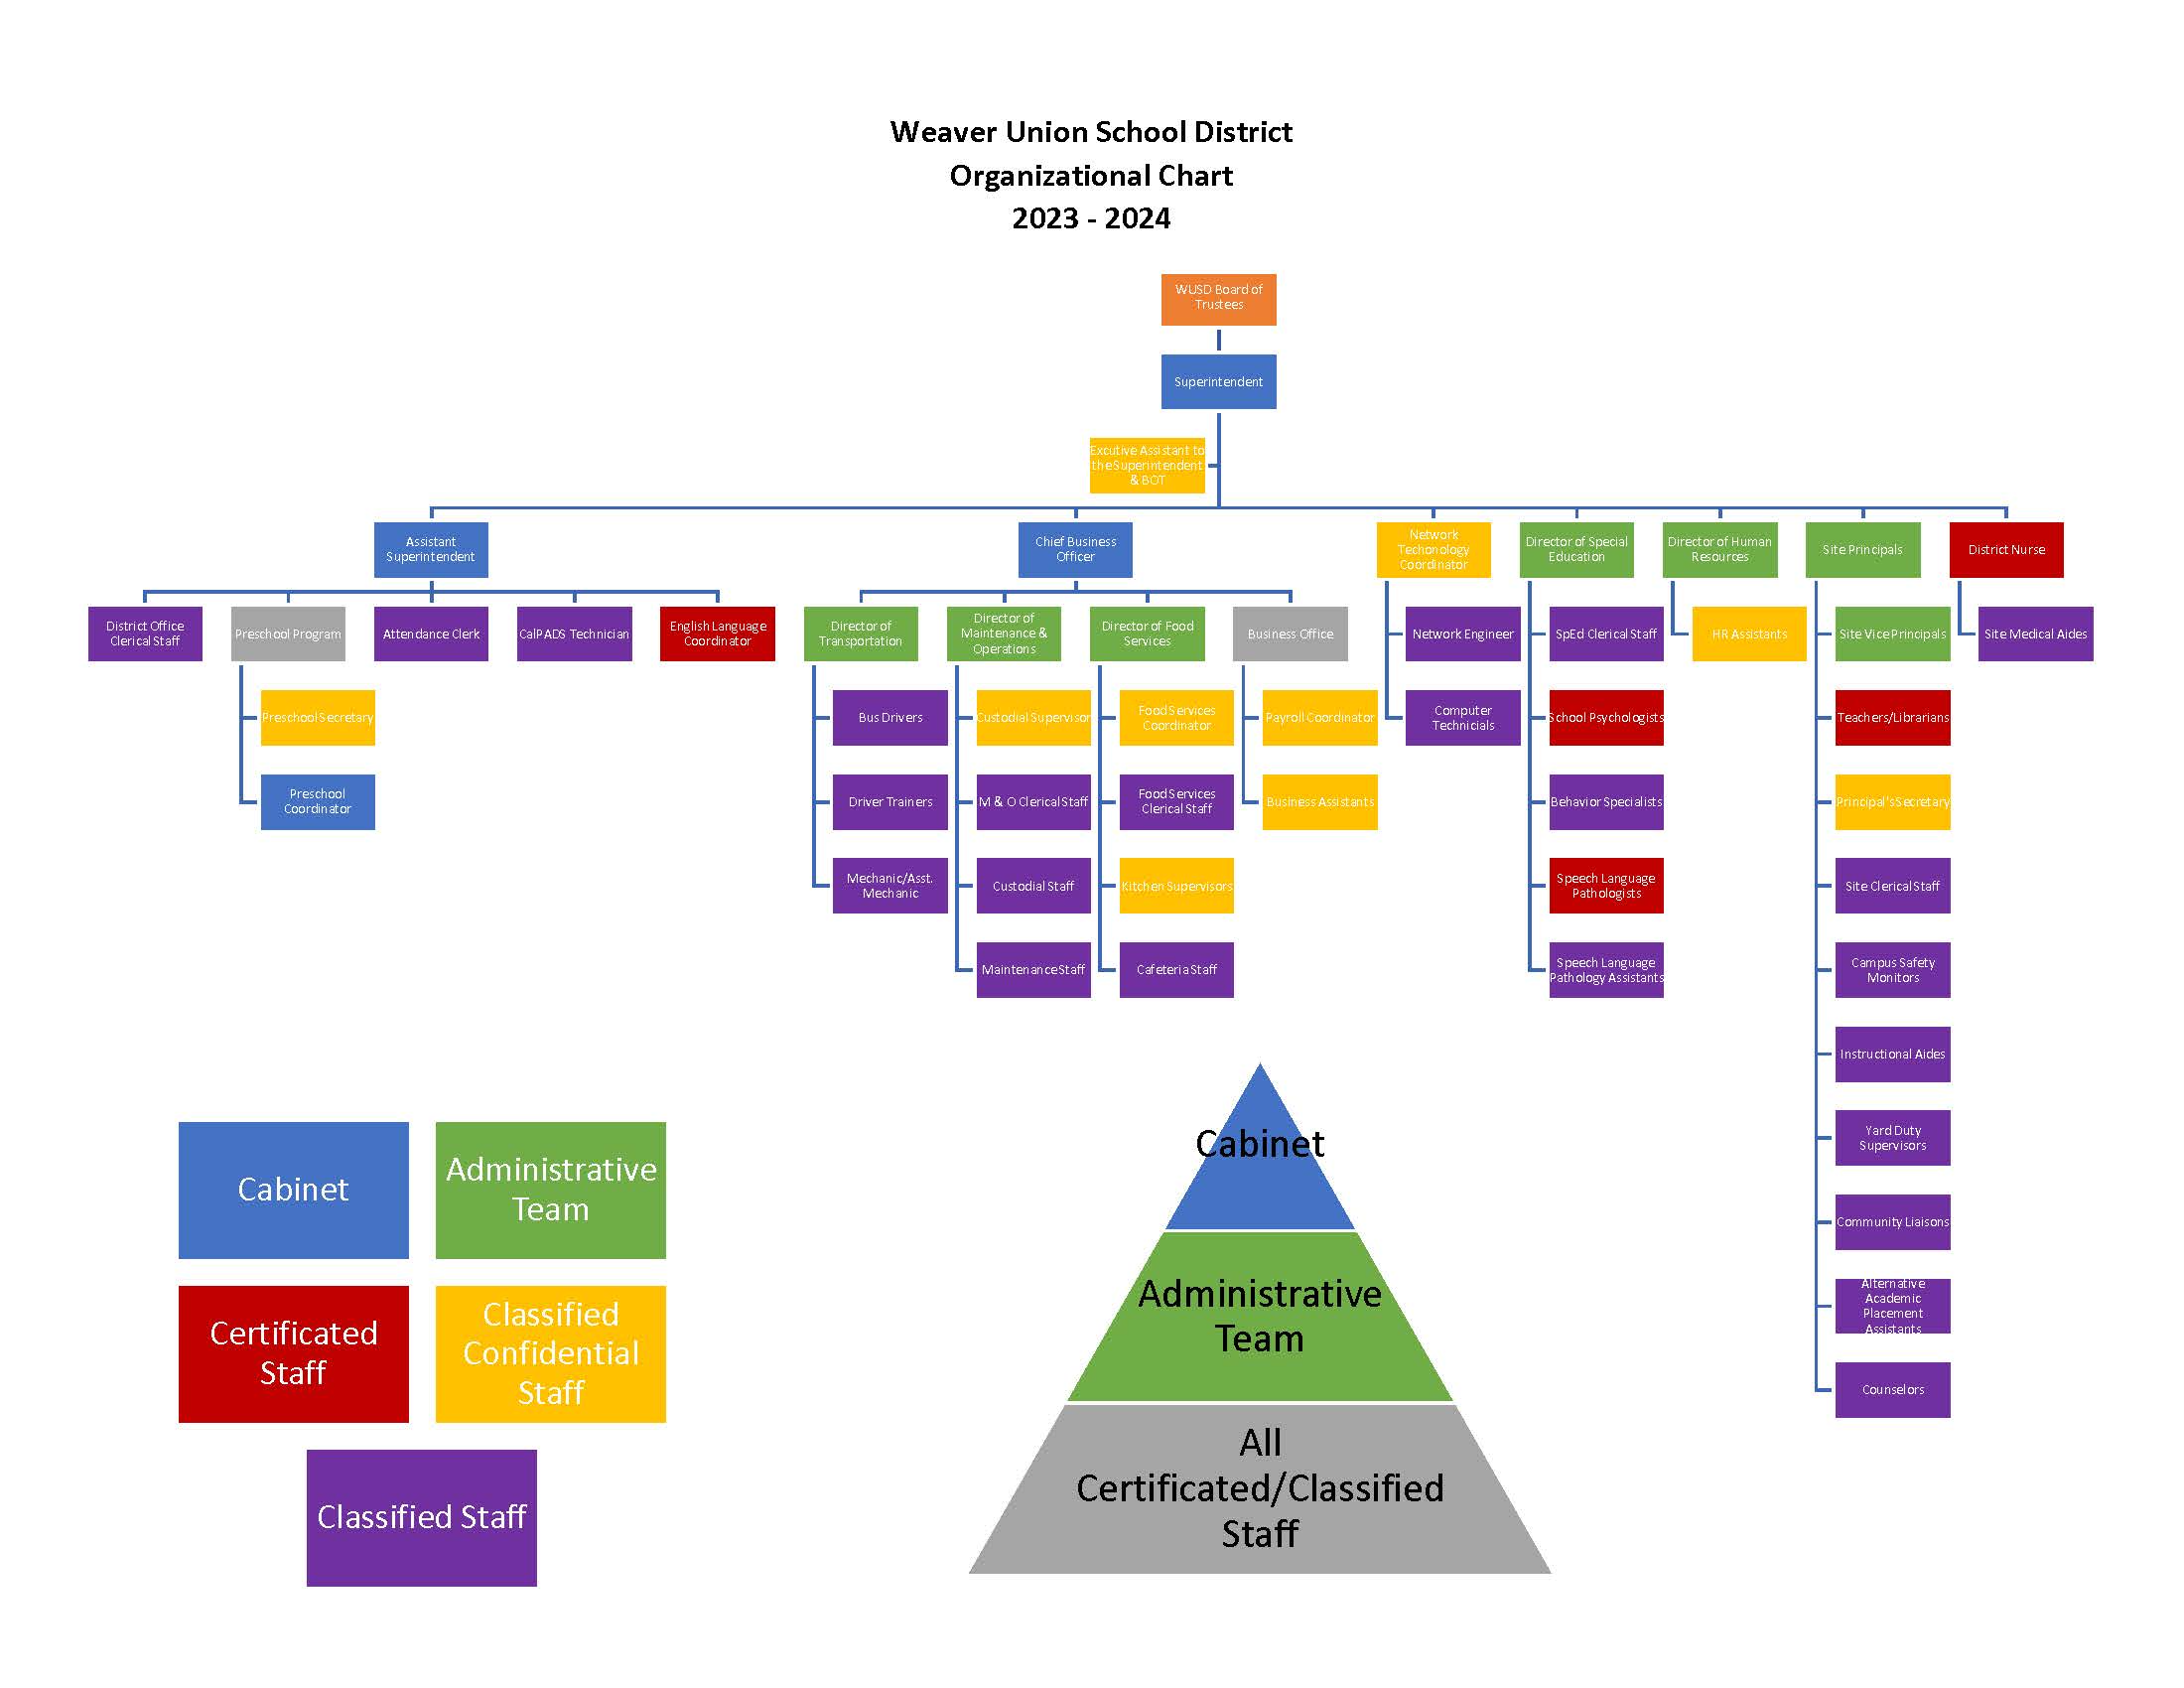 2023-2024 Organizational Chart